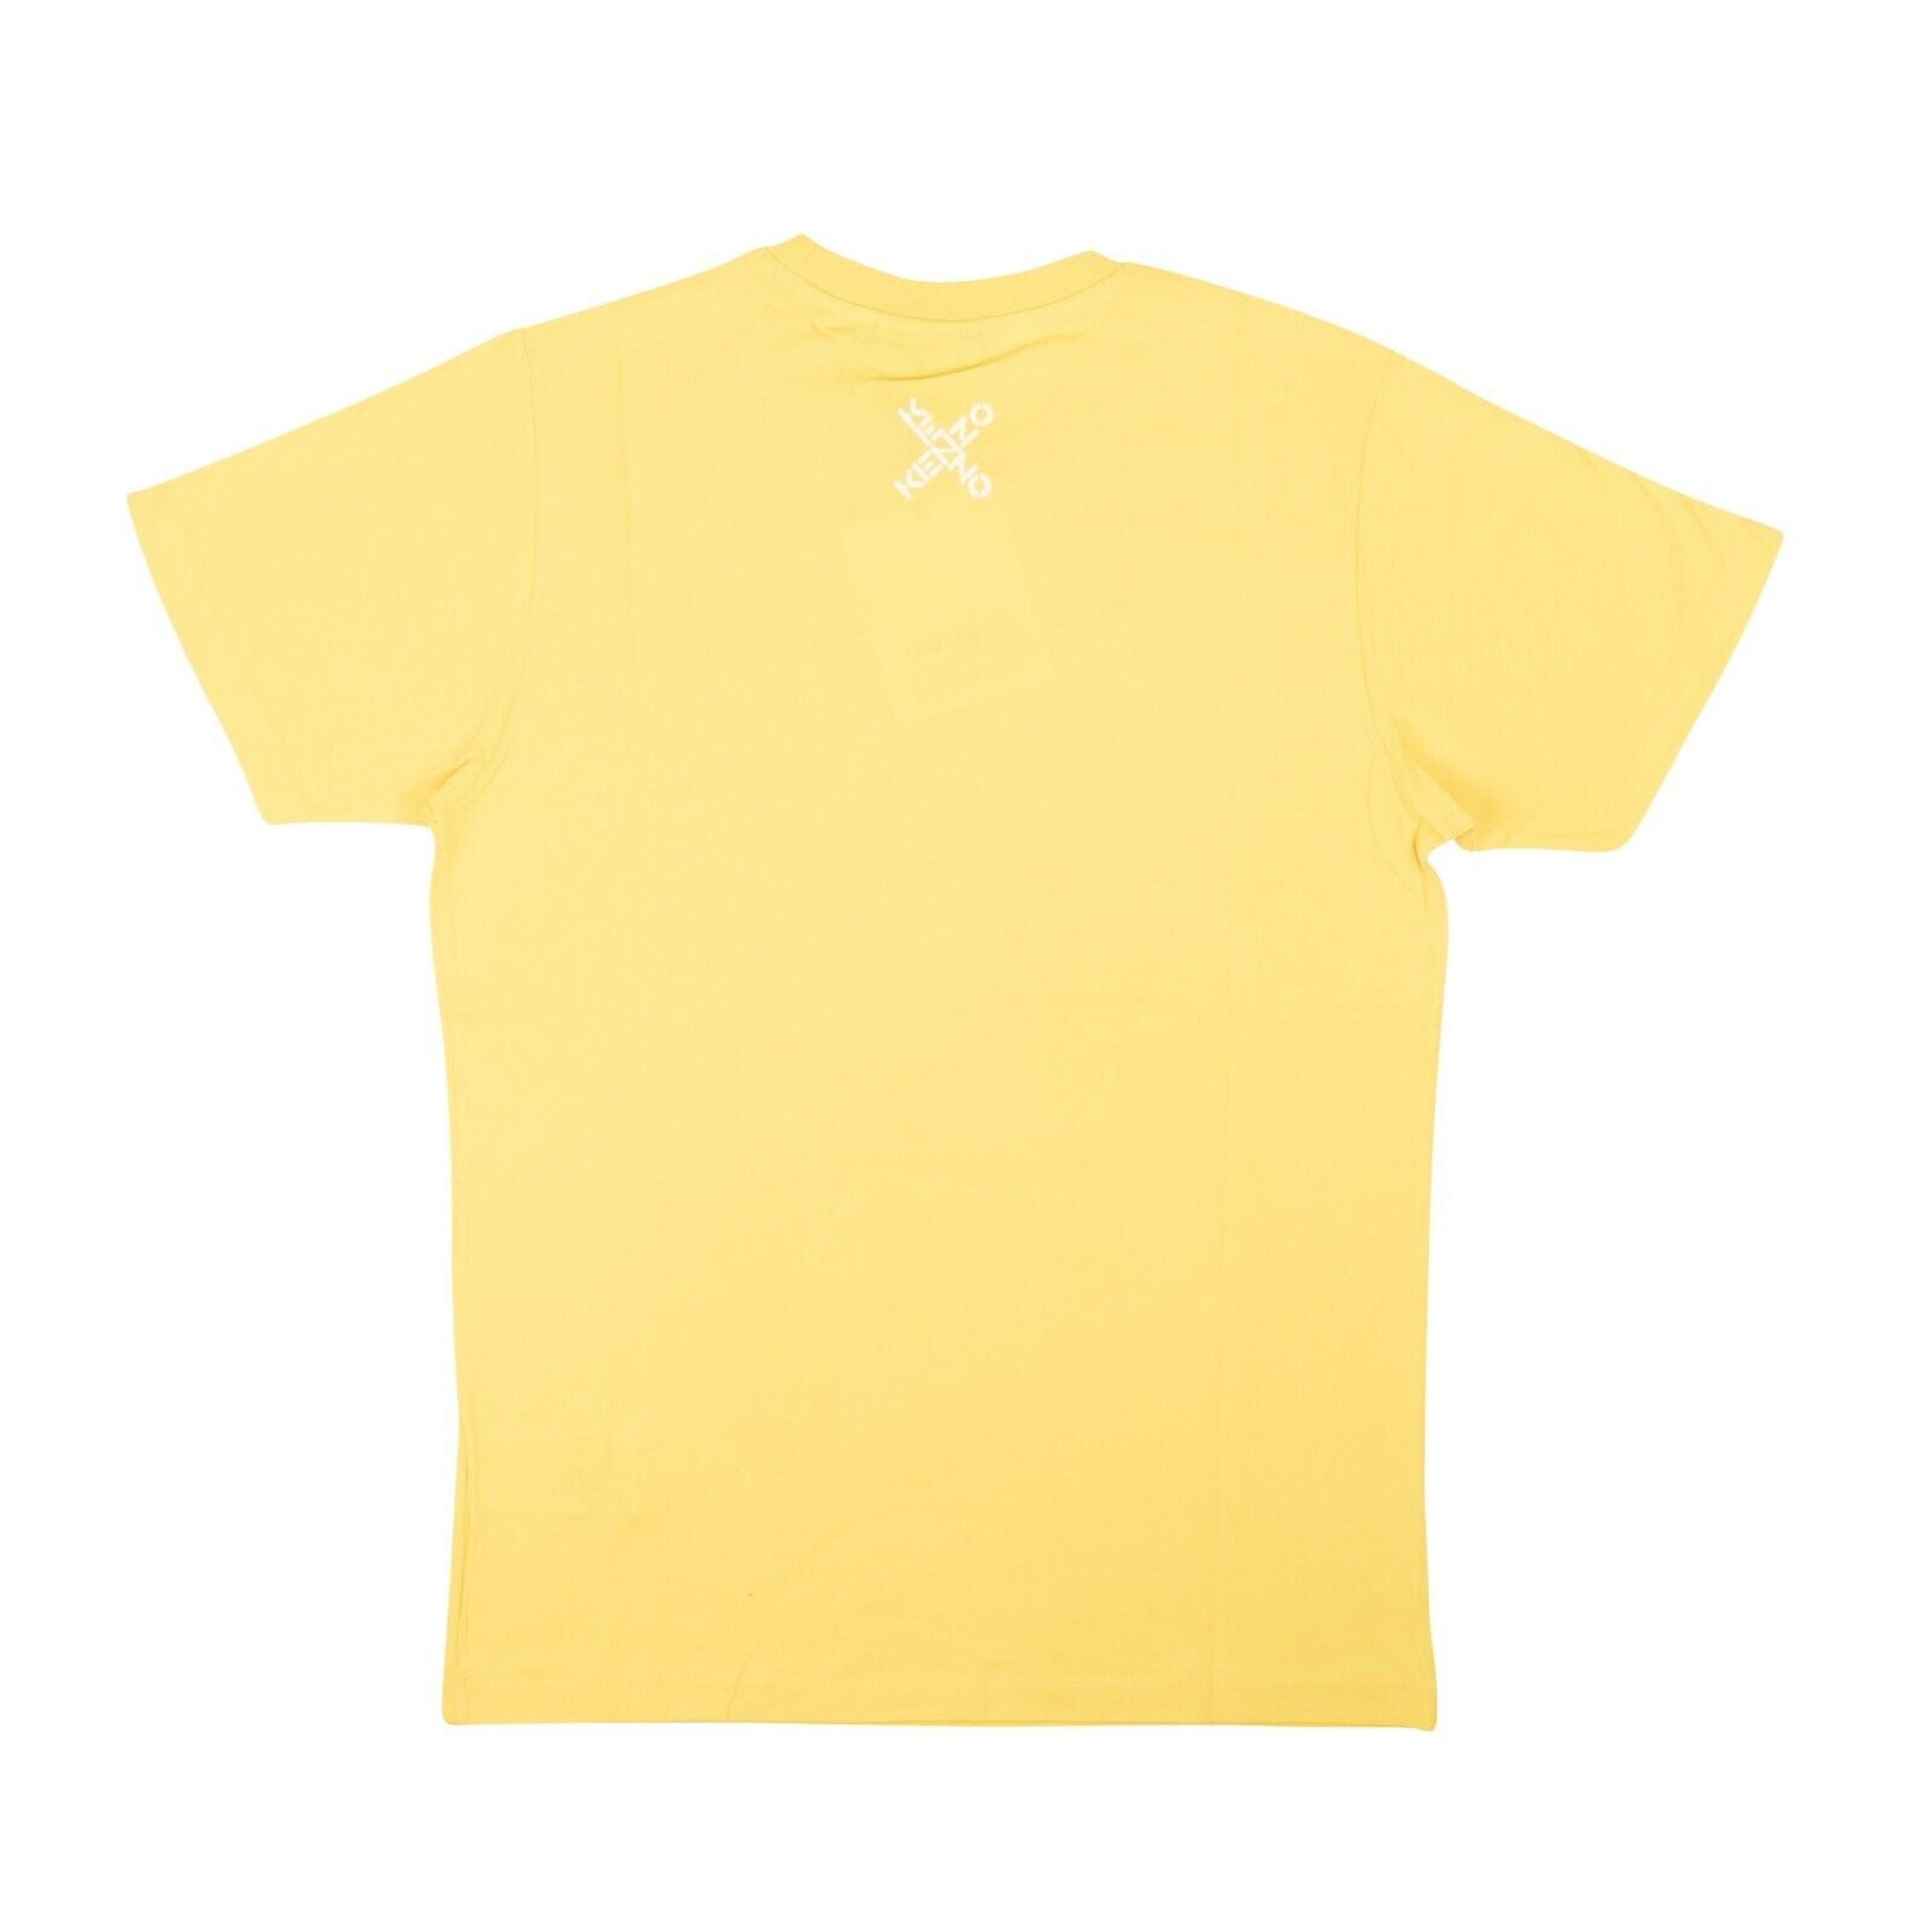 Alternate View 2 of Kenzo Big X T-Shirt - Yellow